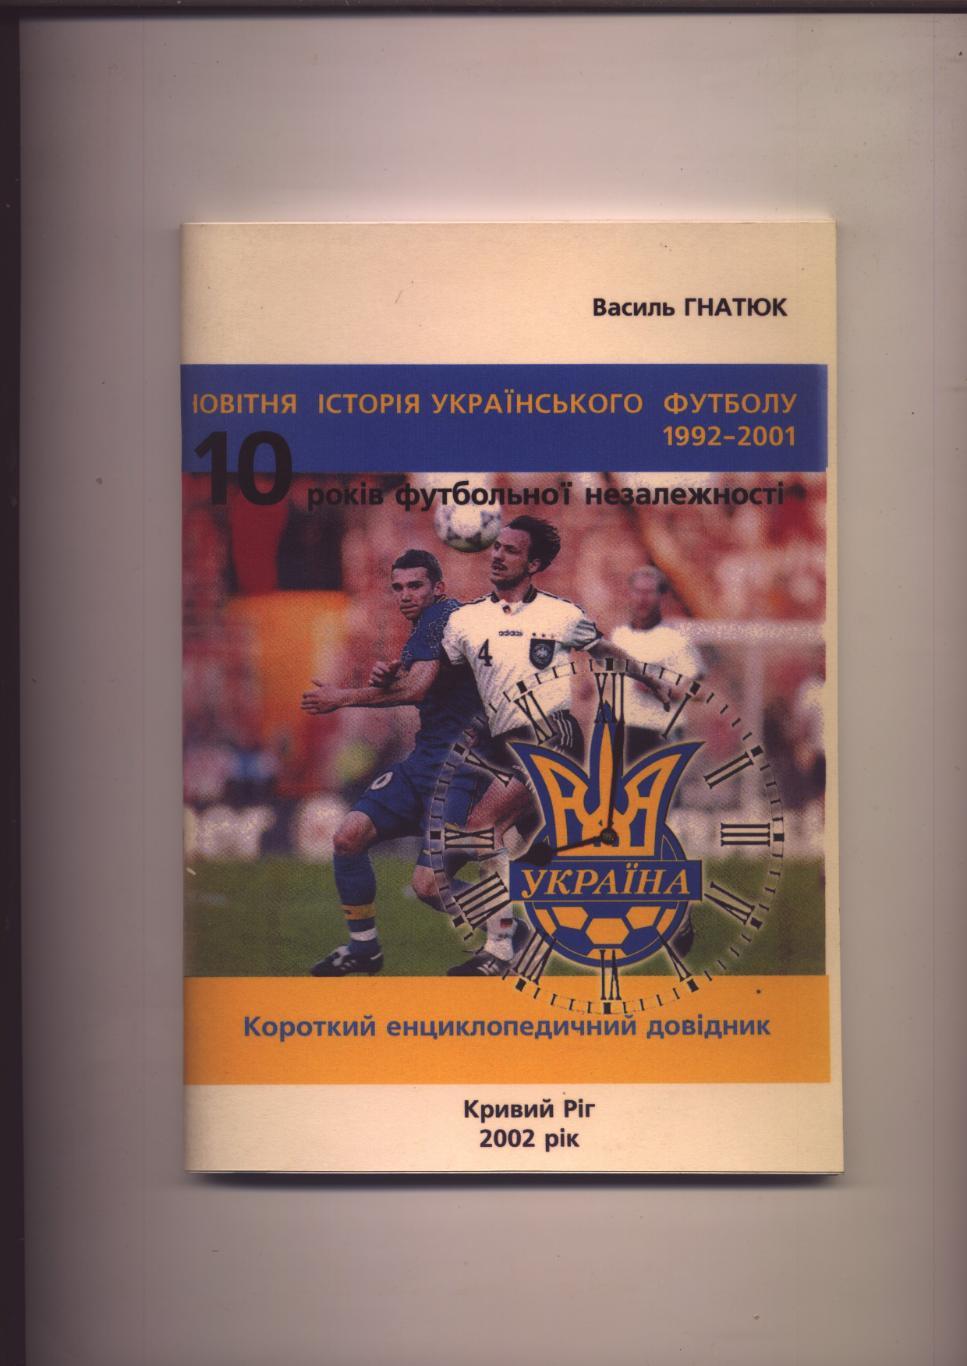 В Гнатюк Новая история украинского футбола 1992-2001 г 80 с подробности см. ниже